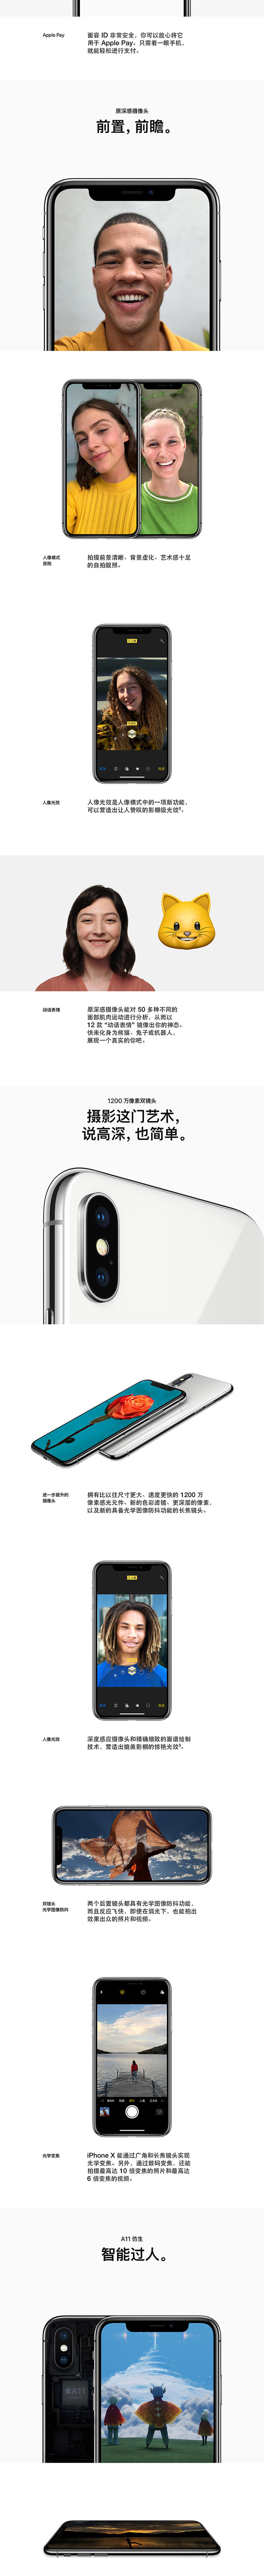 Apple iPhone X (A1865) 64GB 深空灰色 移动联通电信4G手机